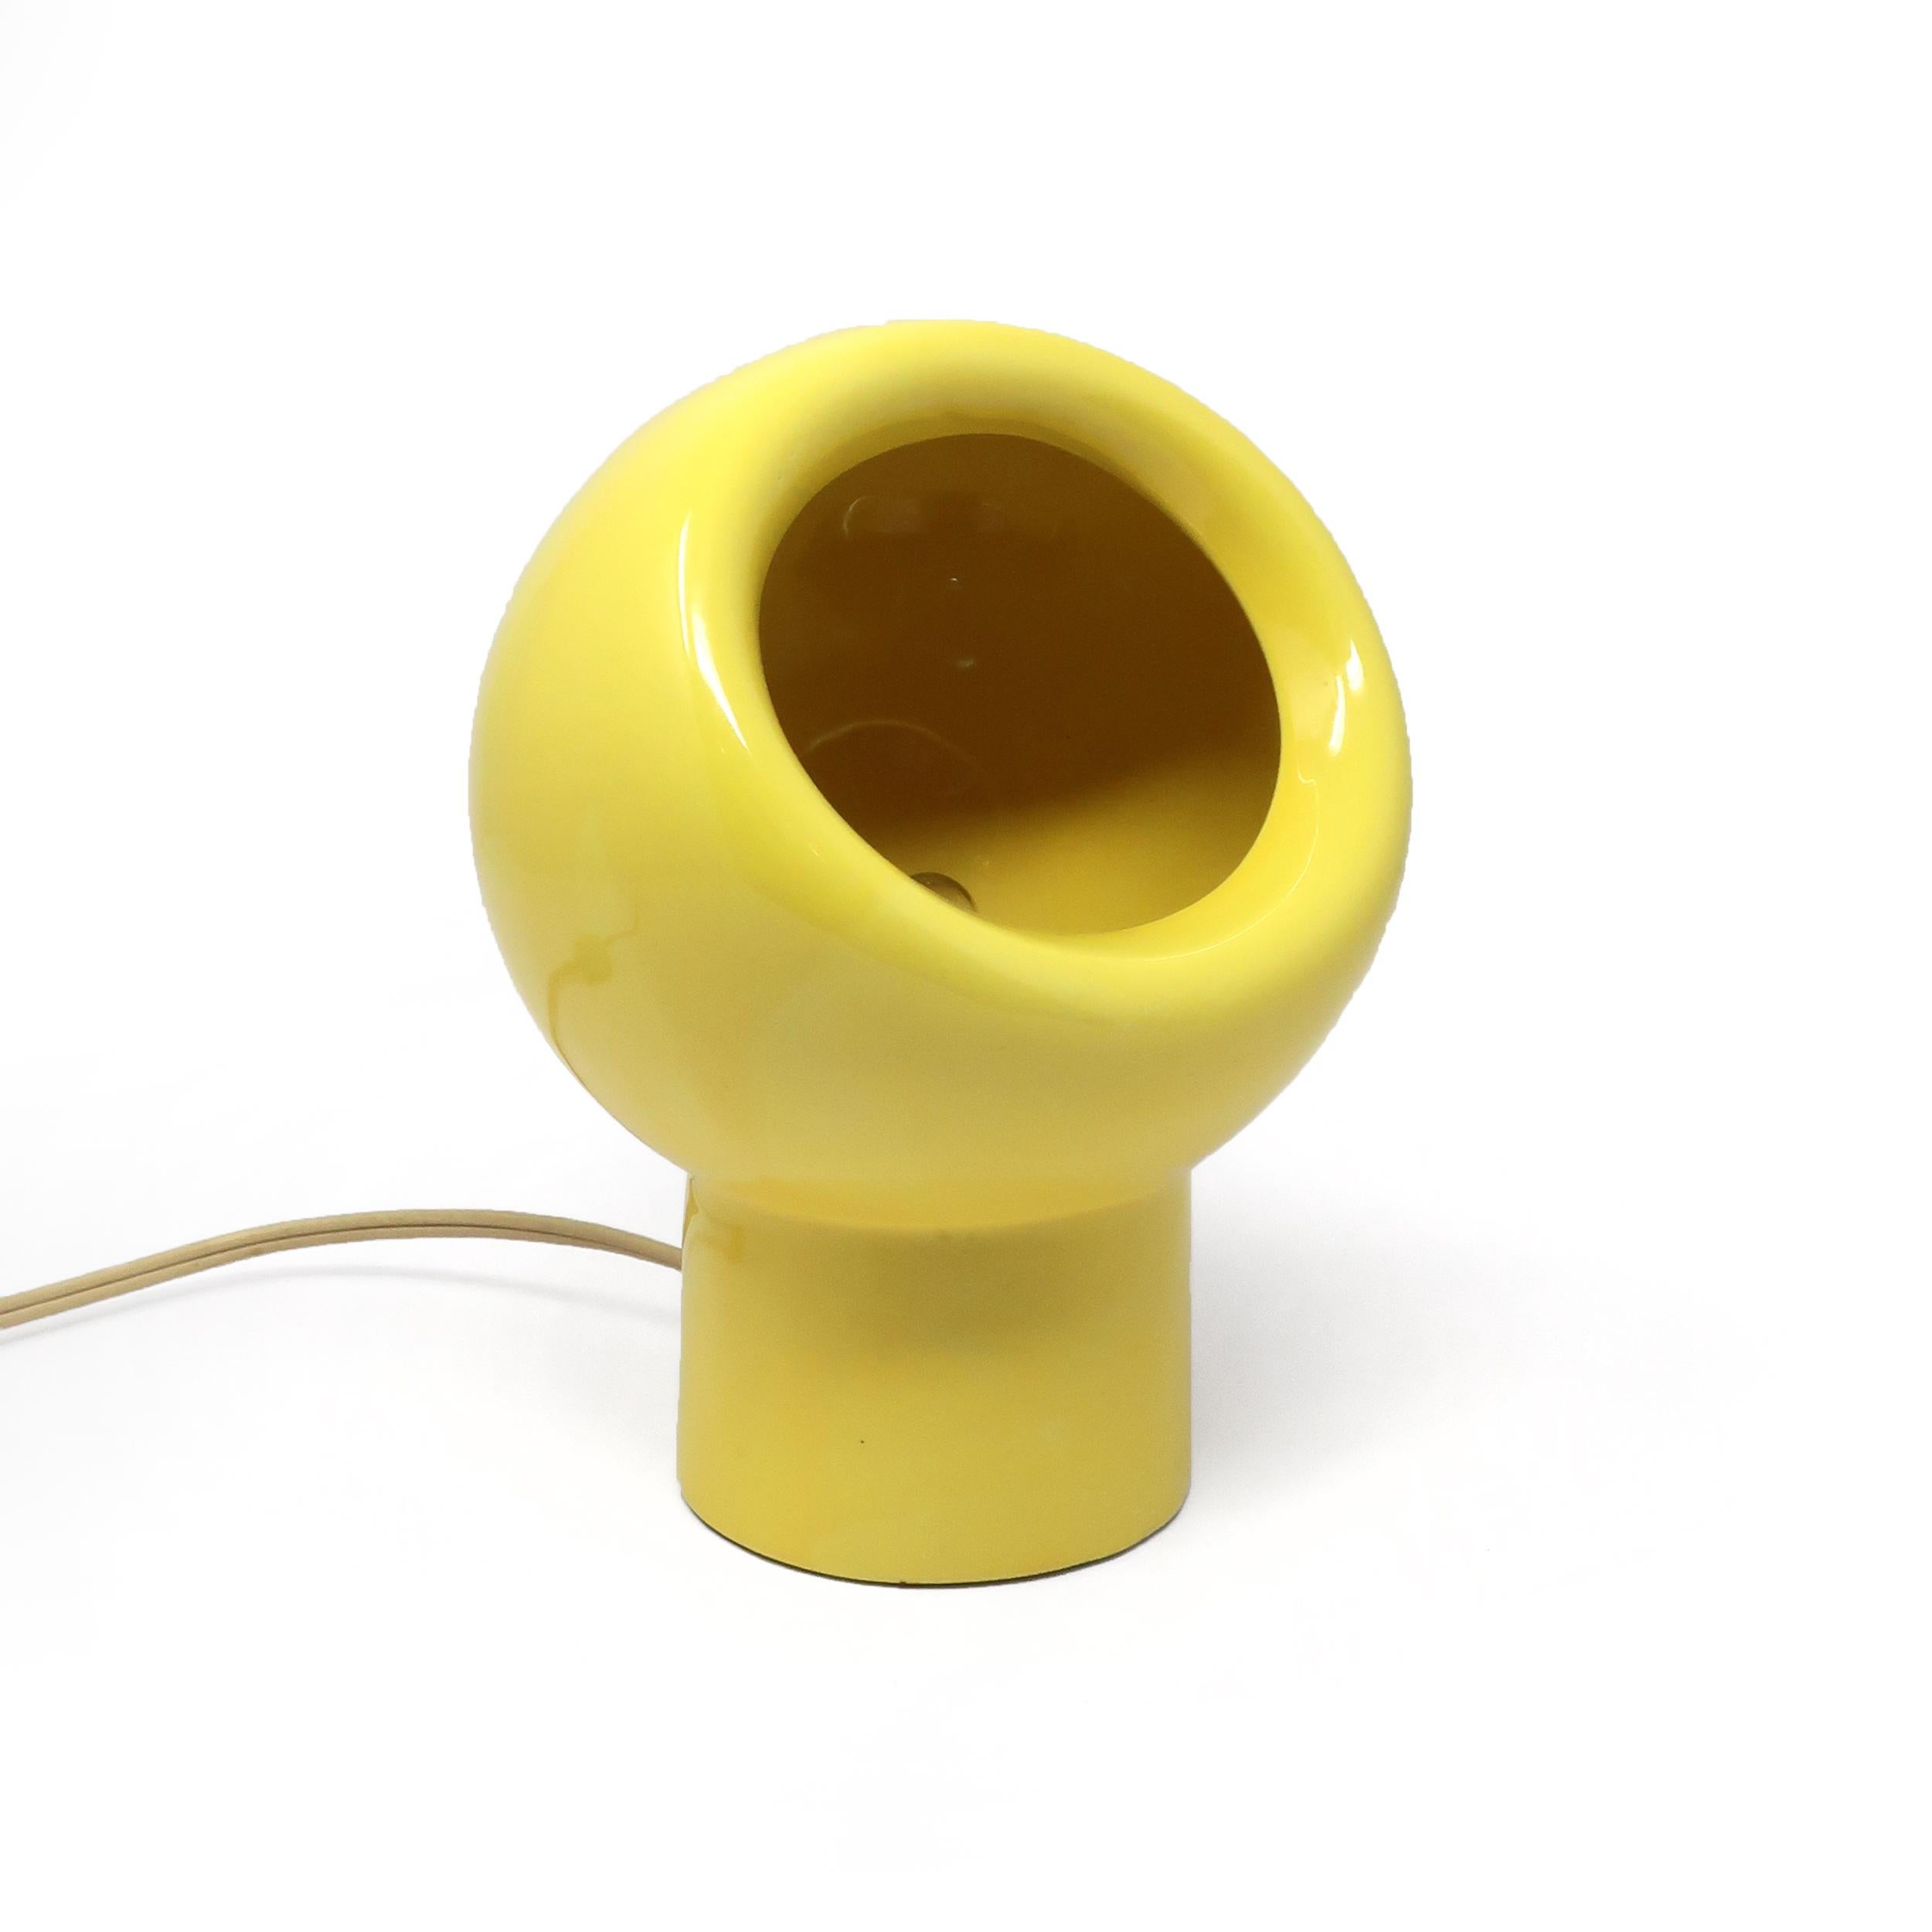 Eine sehr coole moderne Keramik-Augen-Tischlampe aus der Mitte des Jahrhunderts in leuchtendem Gelb.  Für eine einzelne Glühbirne, der Schalter befindet sich am Kabel.  In gutem Vintage-Zustand mit alters- und gebrauchsbedingten